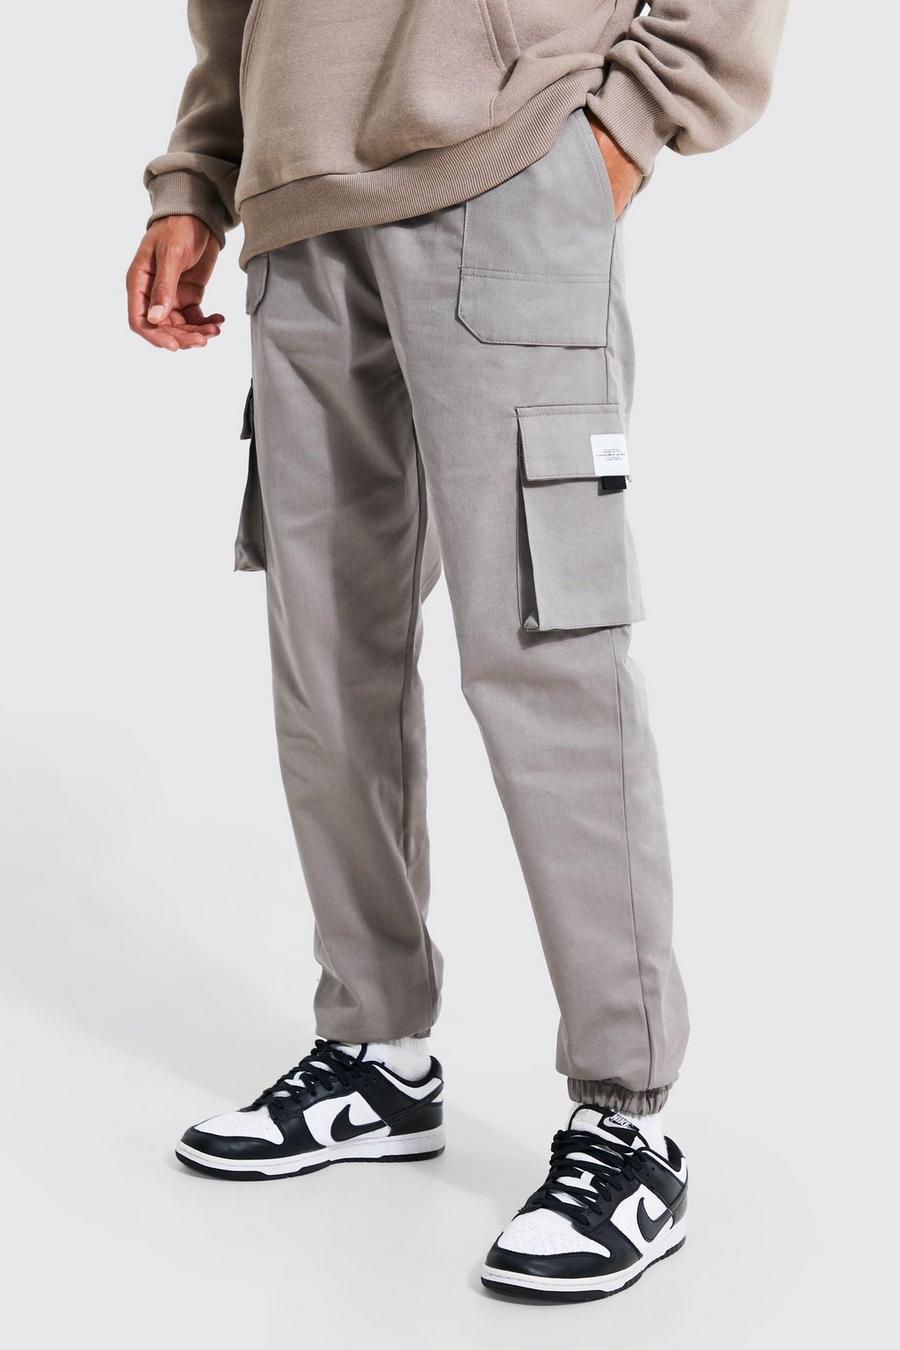 אפור grigio מכנסי ריצה טוויל דגמ'ח עם חגורה בחזית ותווית לגברים גבוהים